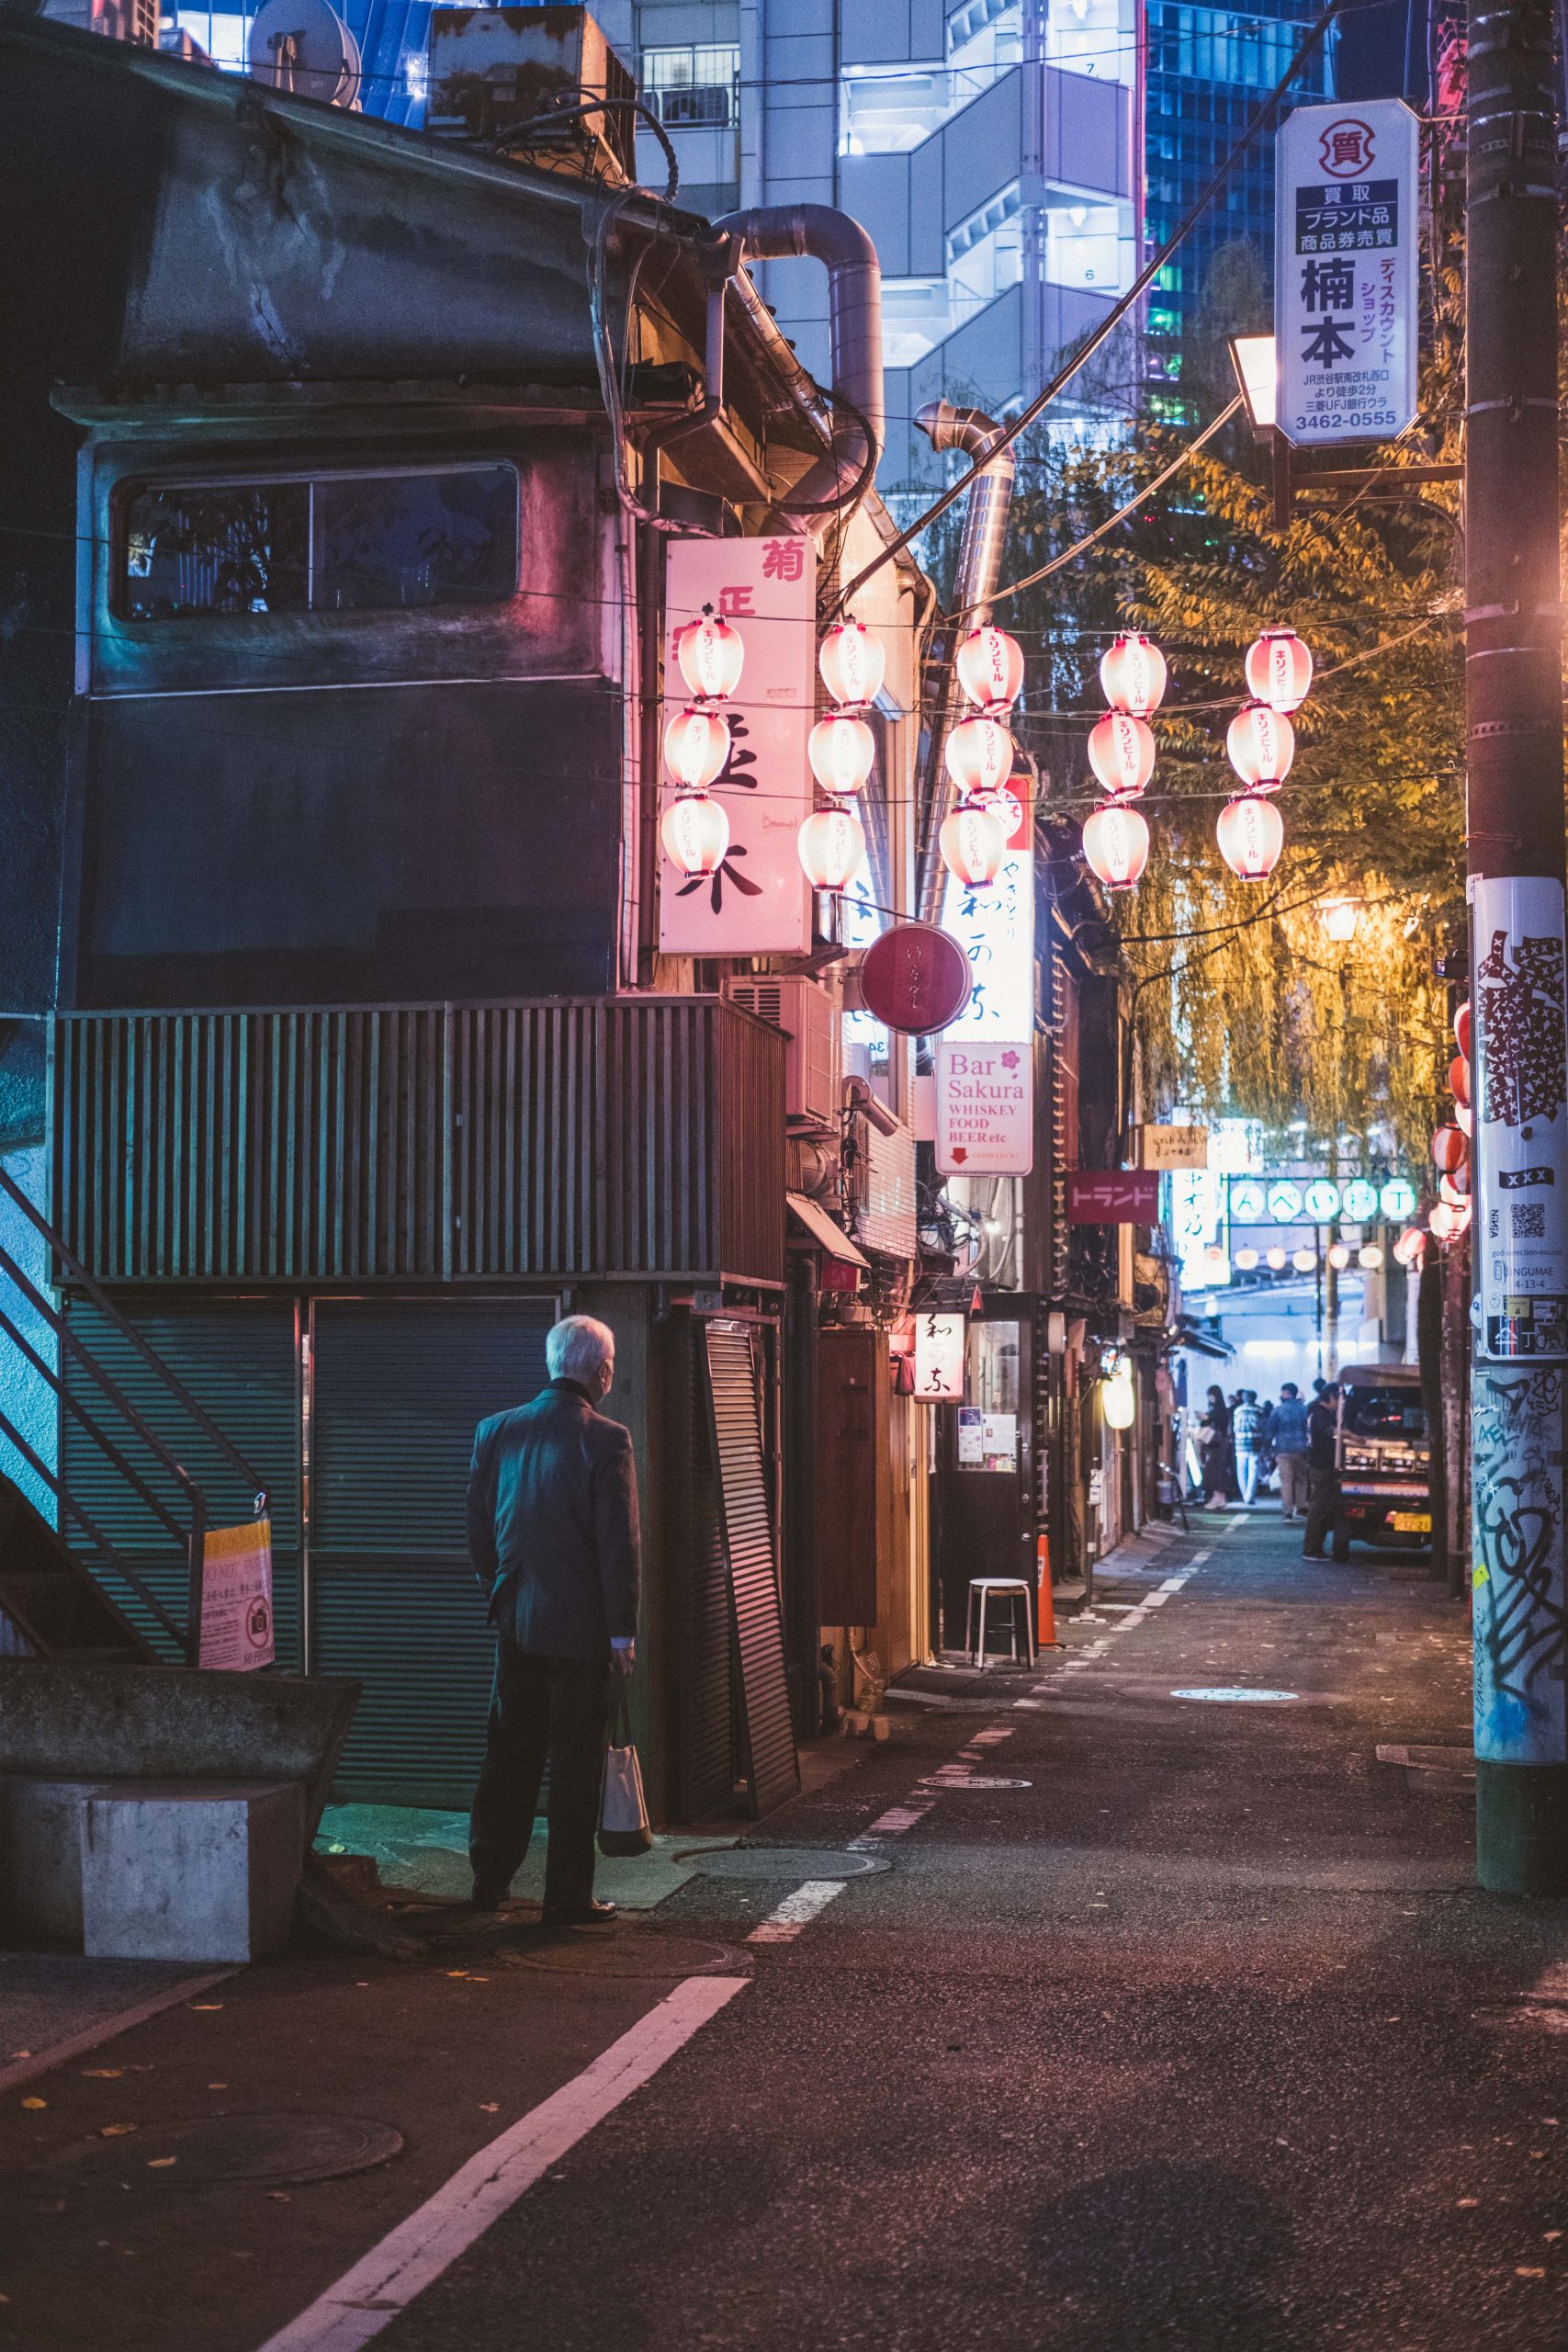 Nonbei Yokocho in Shibuya at night